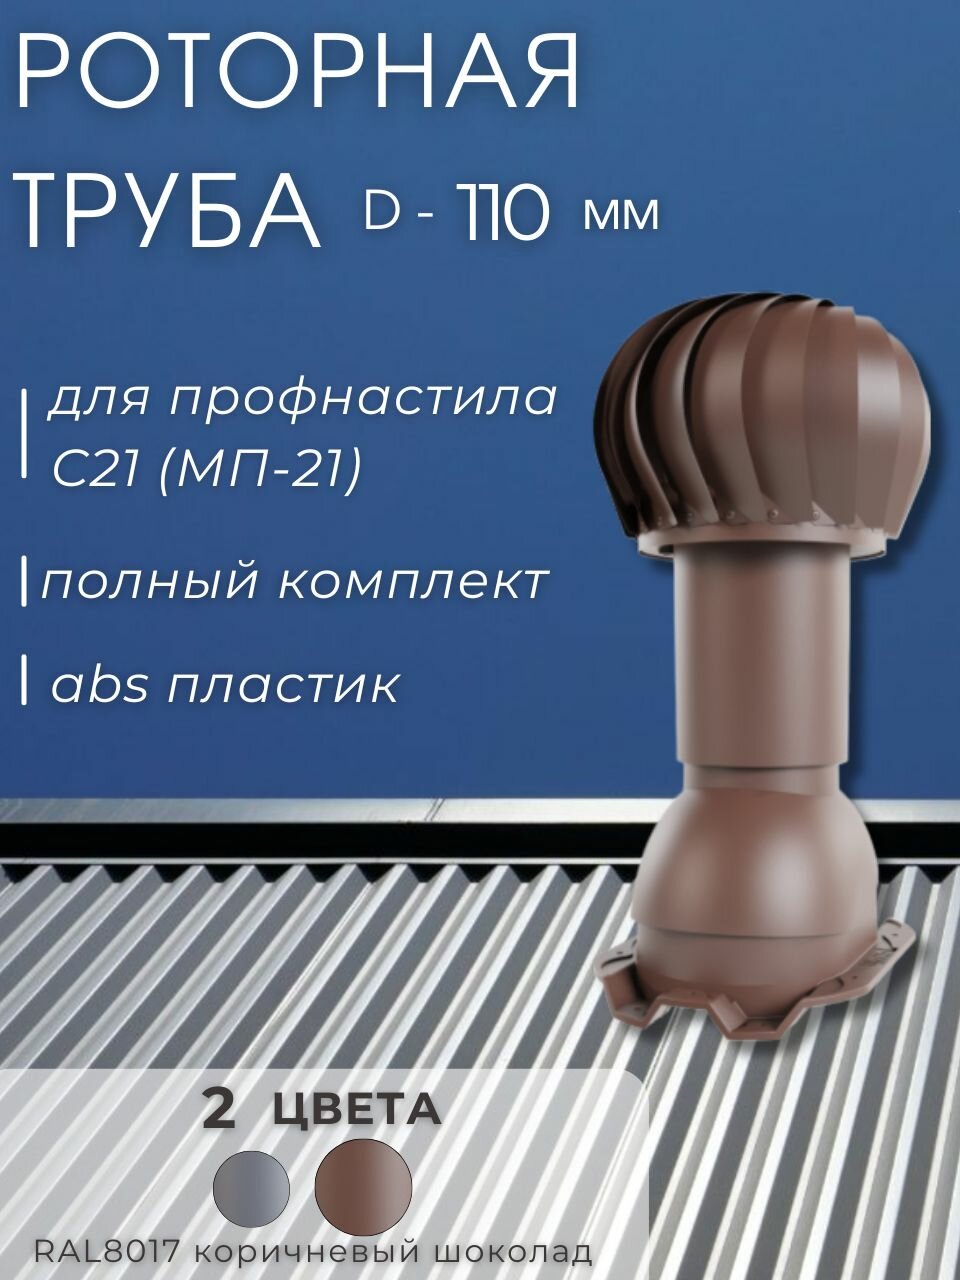 Роторная вентиляционная труба Viotto D-110 мм, утепленная, для металлопрофиля профнастила 21 мм утепленная, RAL8017 коричневый шоколад